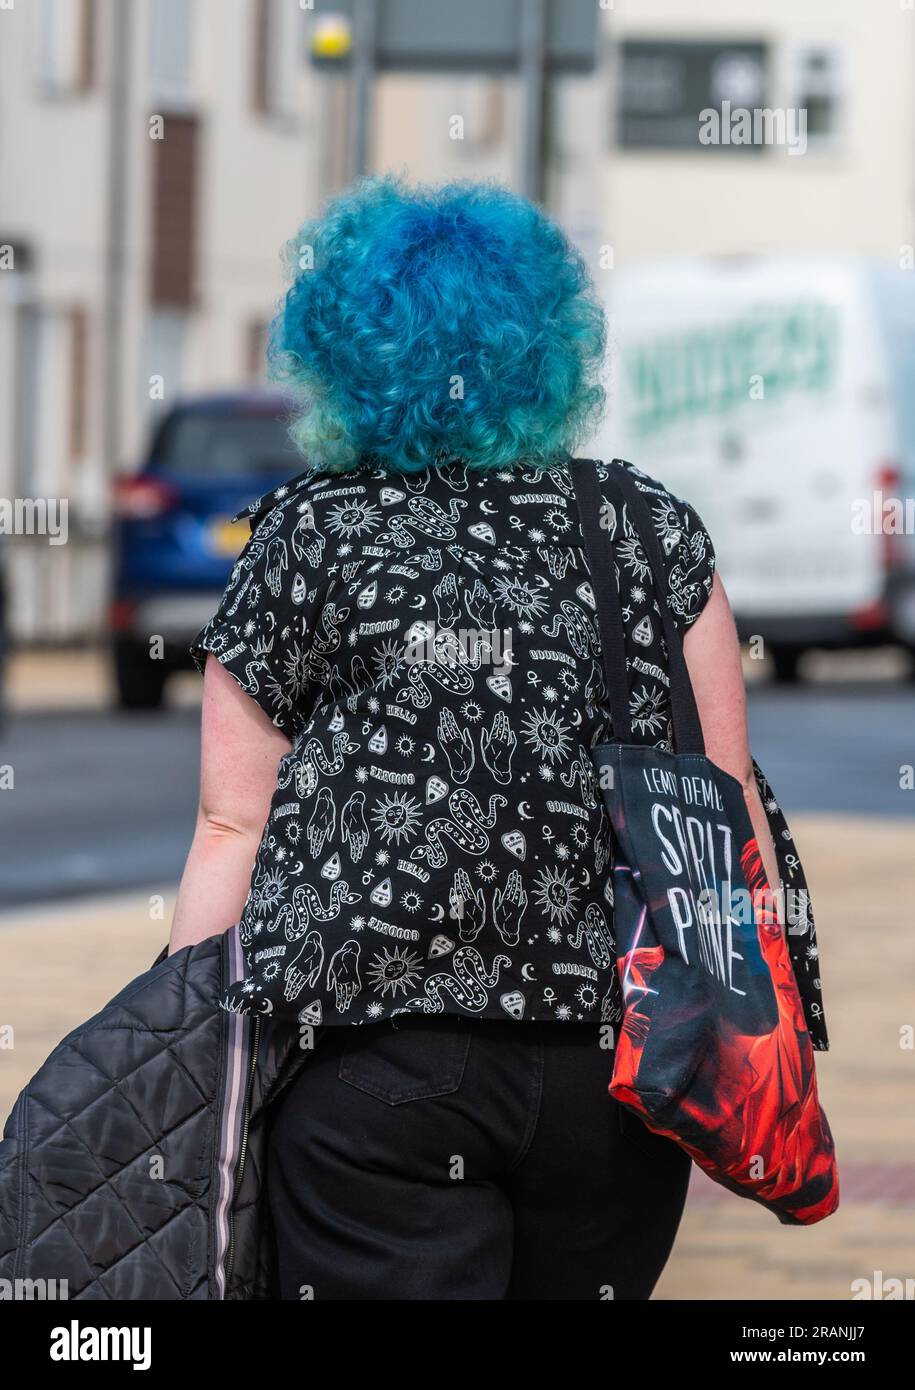 Junge, moderne Frau mit bunten blauen Haaren, die im Sommer in England auf einem Bürgersteig spaziert. Porträt. Stockfoto